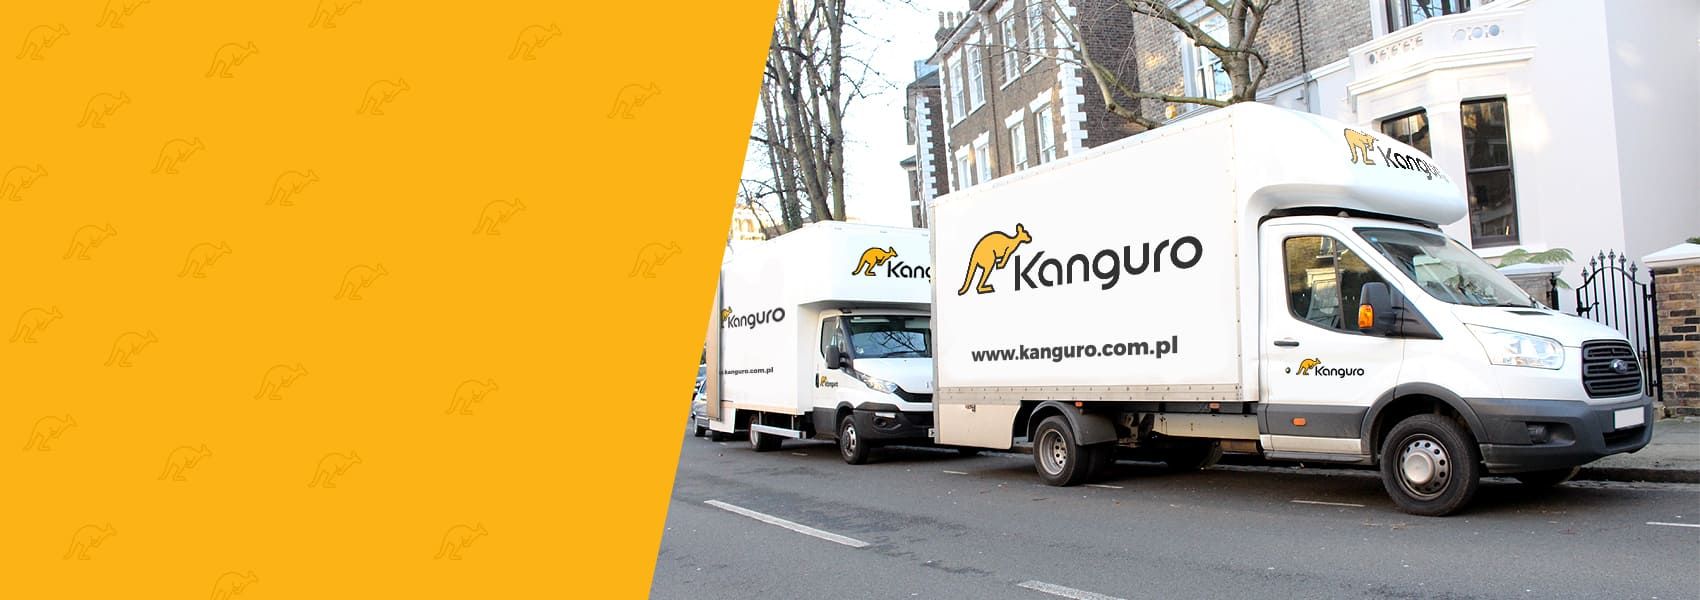 biała ciężarówka z logo Kanguro